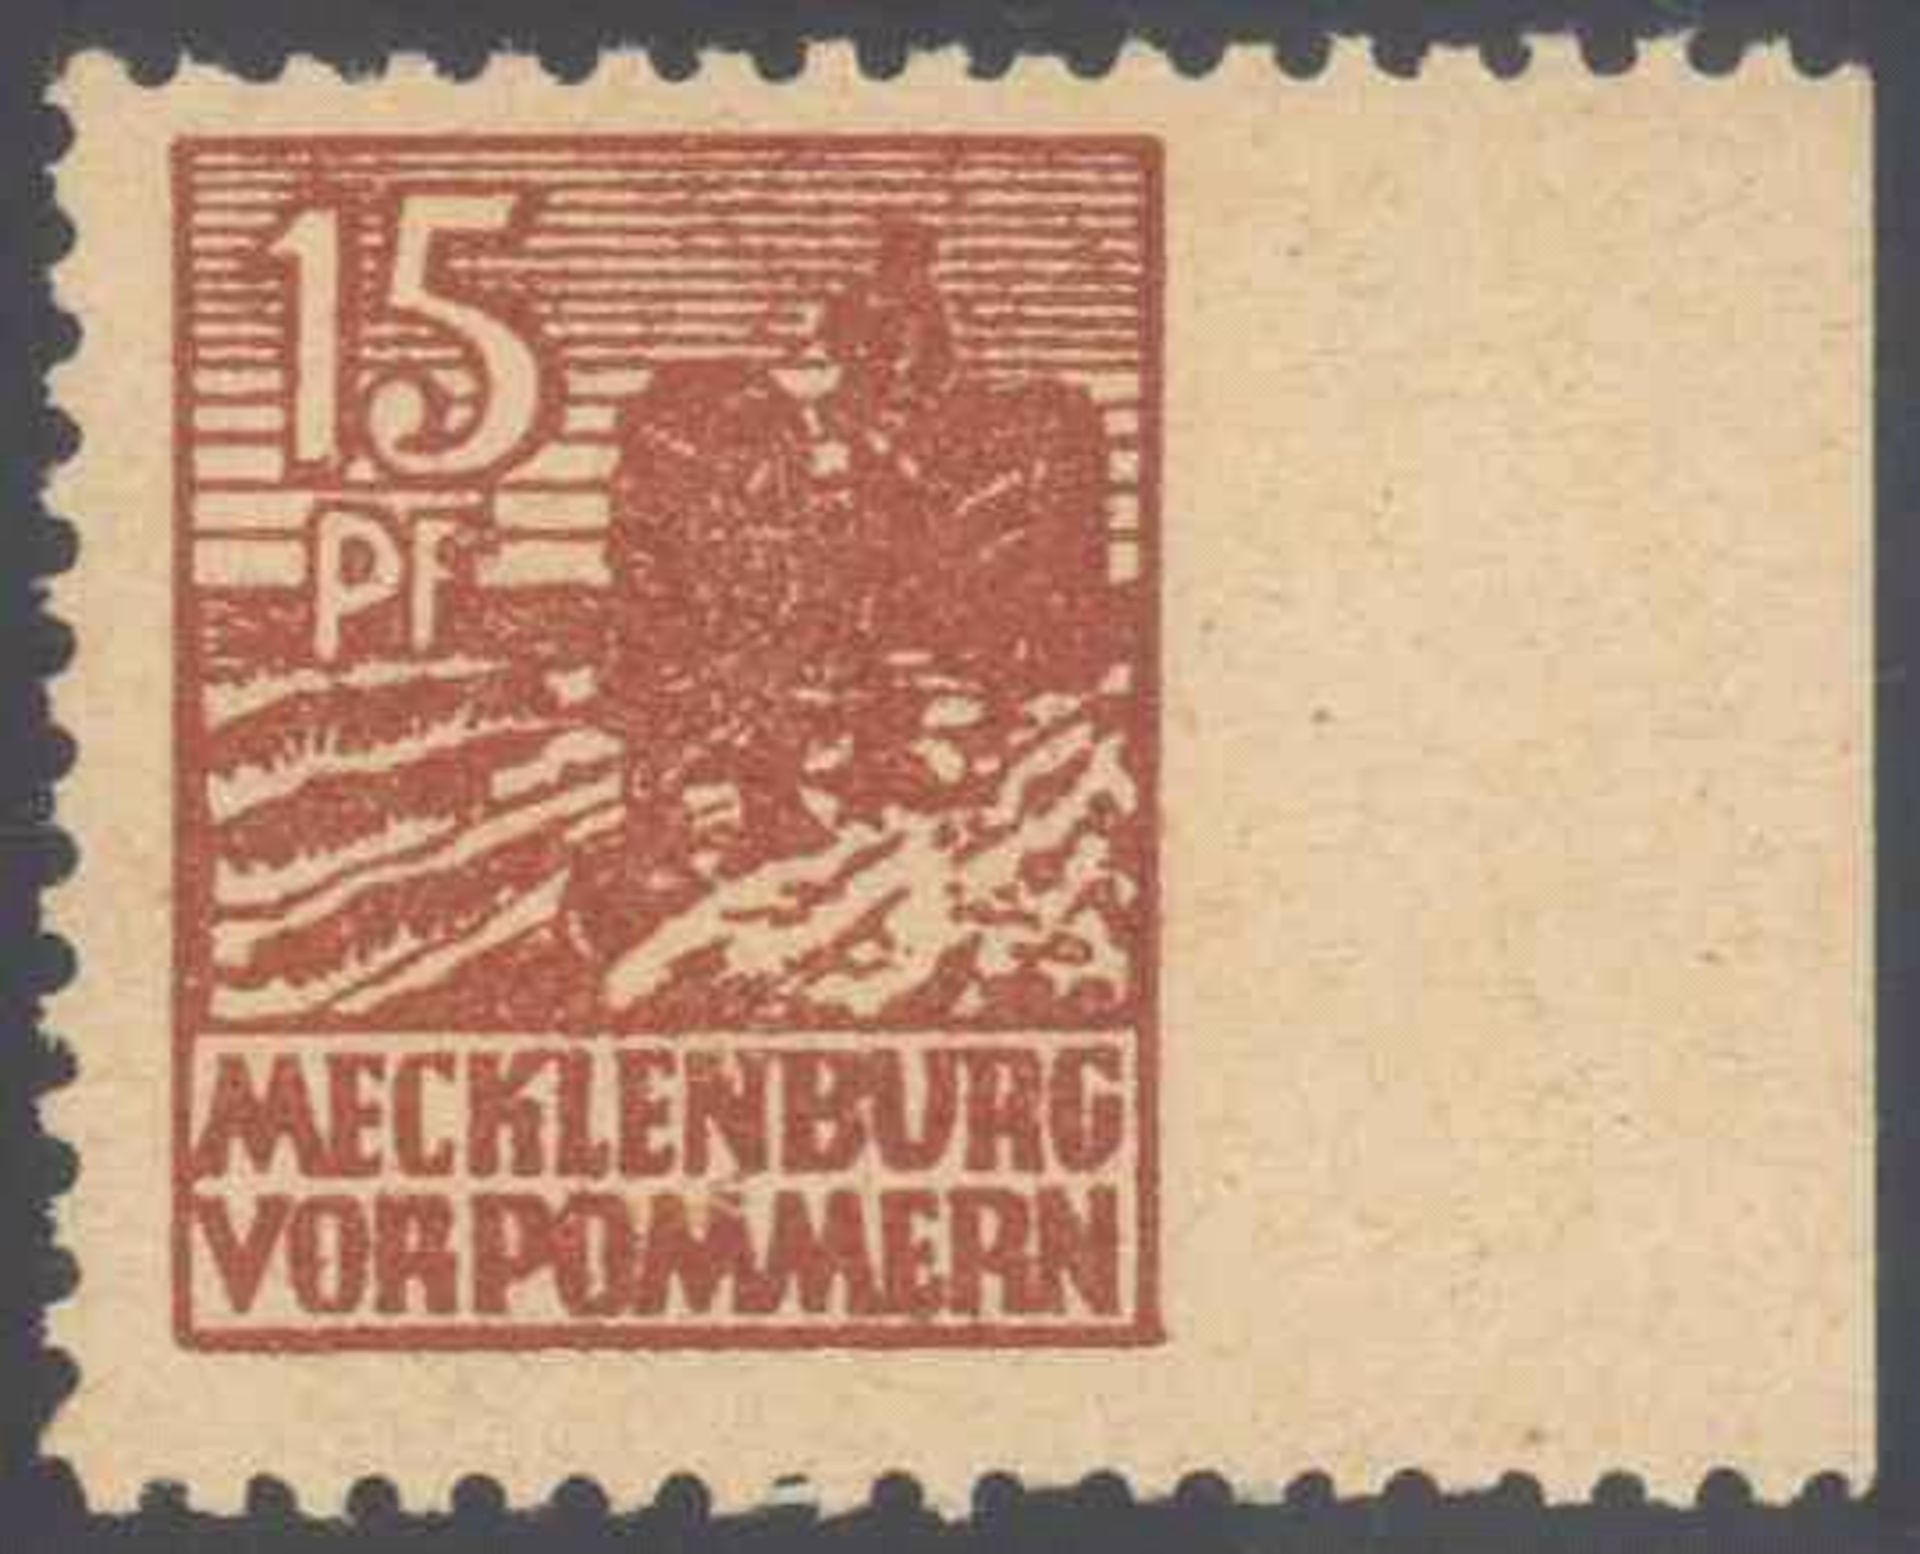 1945 Sowjetische Zone, Mecklenburg-Vorpommern, 15 PfennigAbschied; rechts ungezähnt, Michelnummer 37